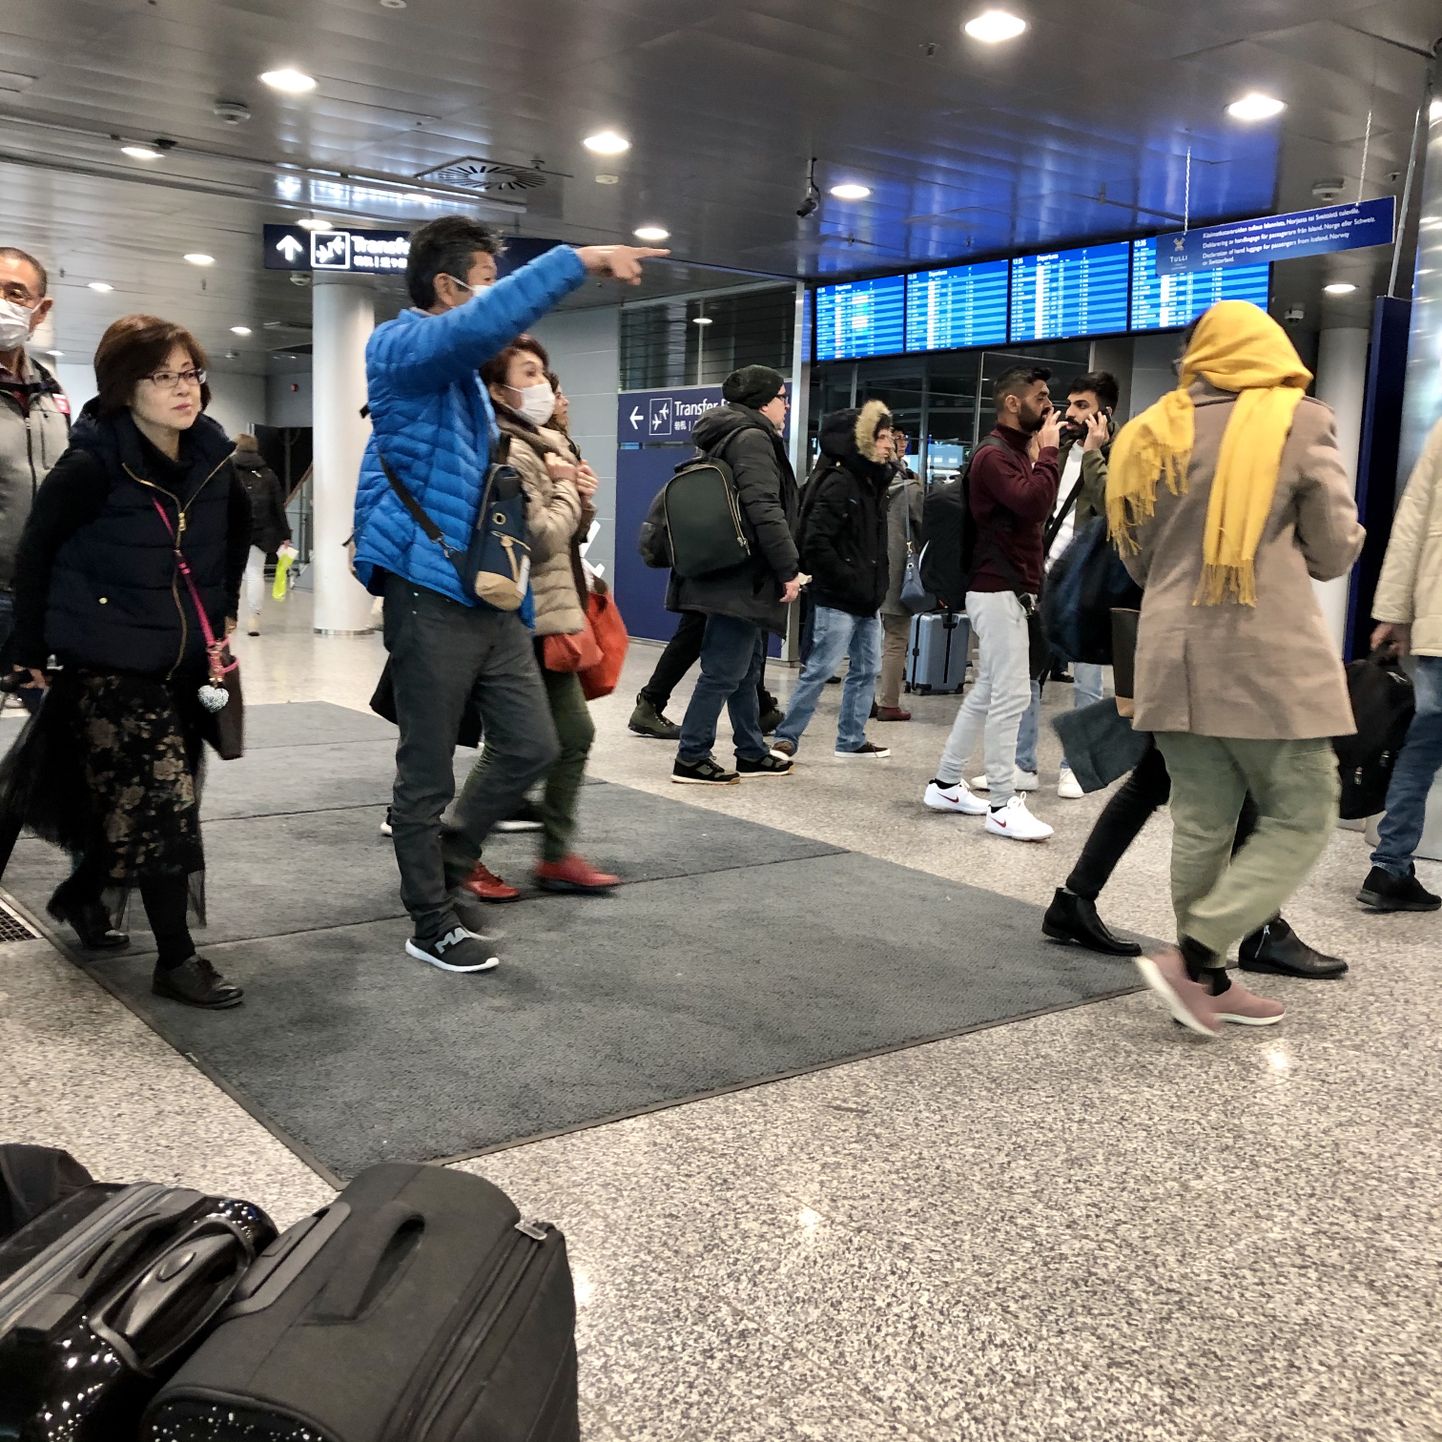 Euroopa lennujaamades on märgata senisest pisut rohkem maskides reisijaid, kuid inimeste reisikihku ei ole koroonaviirus küll seni veel vähendanud. Pilt on tehtud Helsingi lennujaamas.